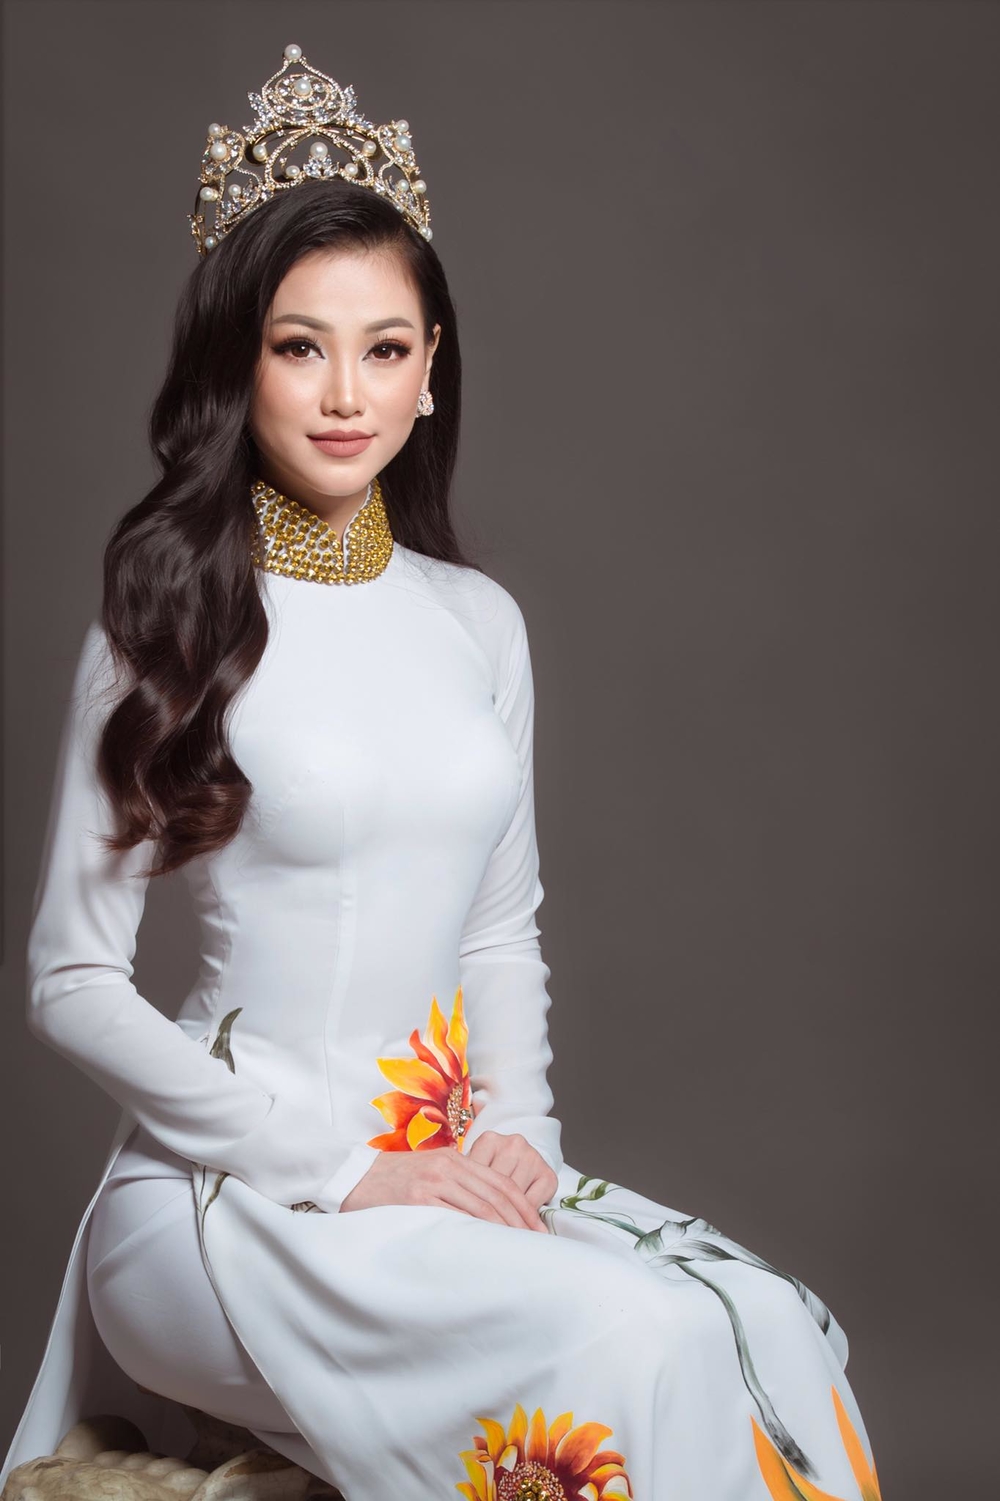 Trước giờ G, đại diện Việt Nam liên tục được dự đoán đăng quang Miss Earth - Tin sao Viet - Tin tuc sao Viet - Scandal sao Viet - Tin tuc cua Sao - Tin cua Sao